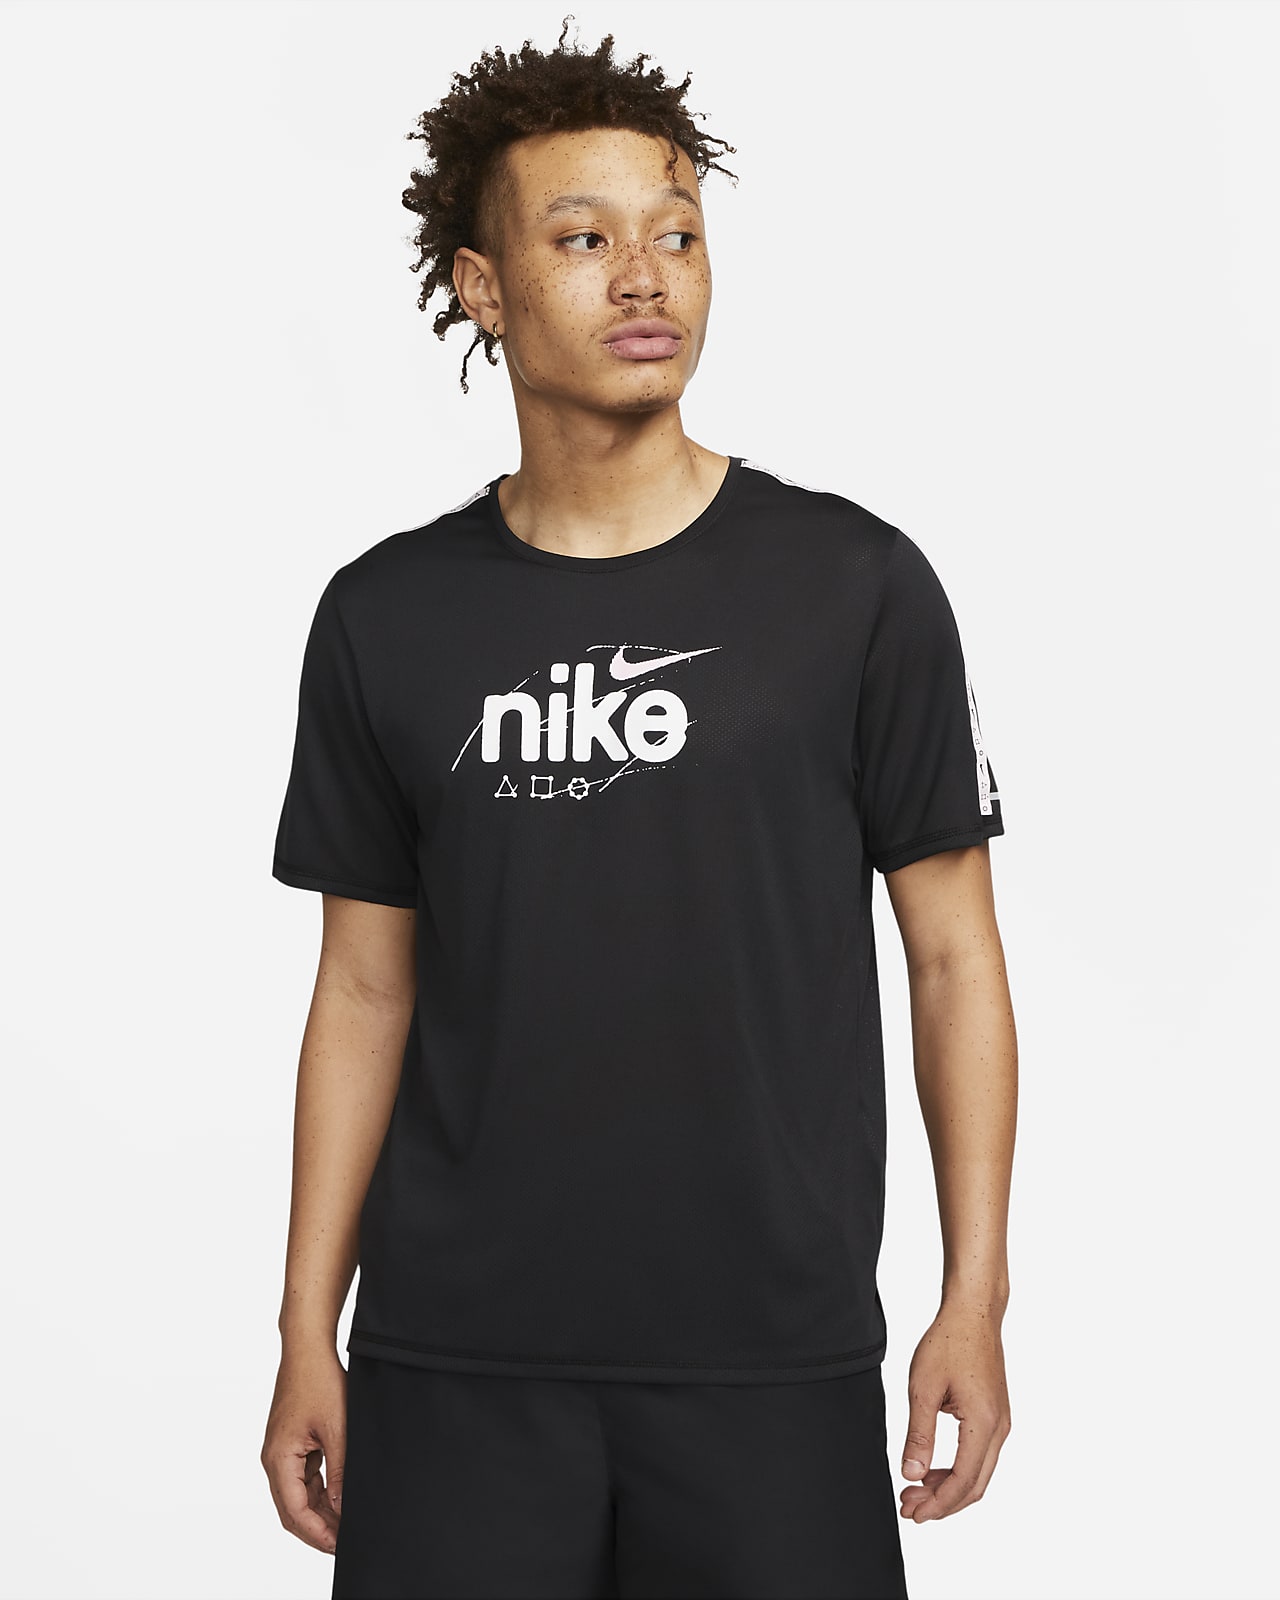 Nike Dri-FIT Miler D.Y.E. Kurzarm-Laufoberteil für Herren